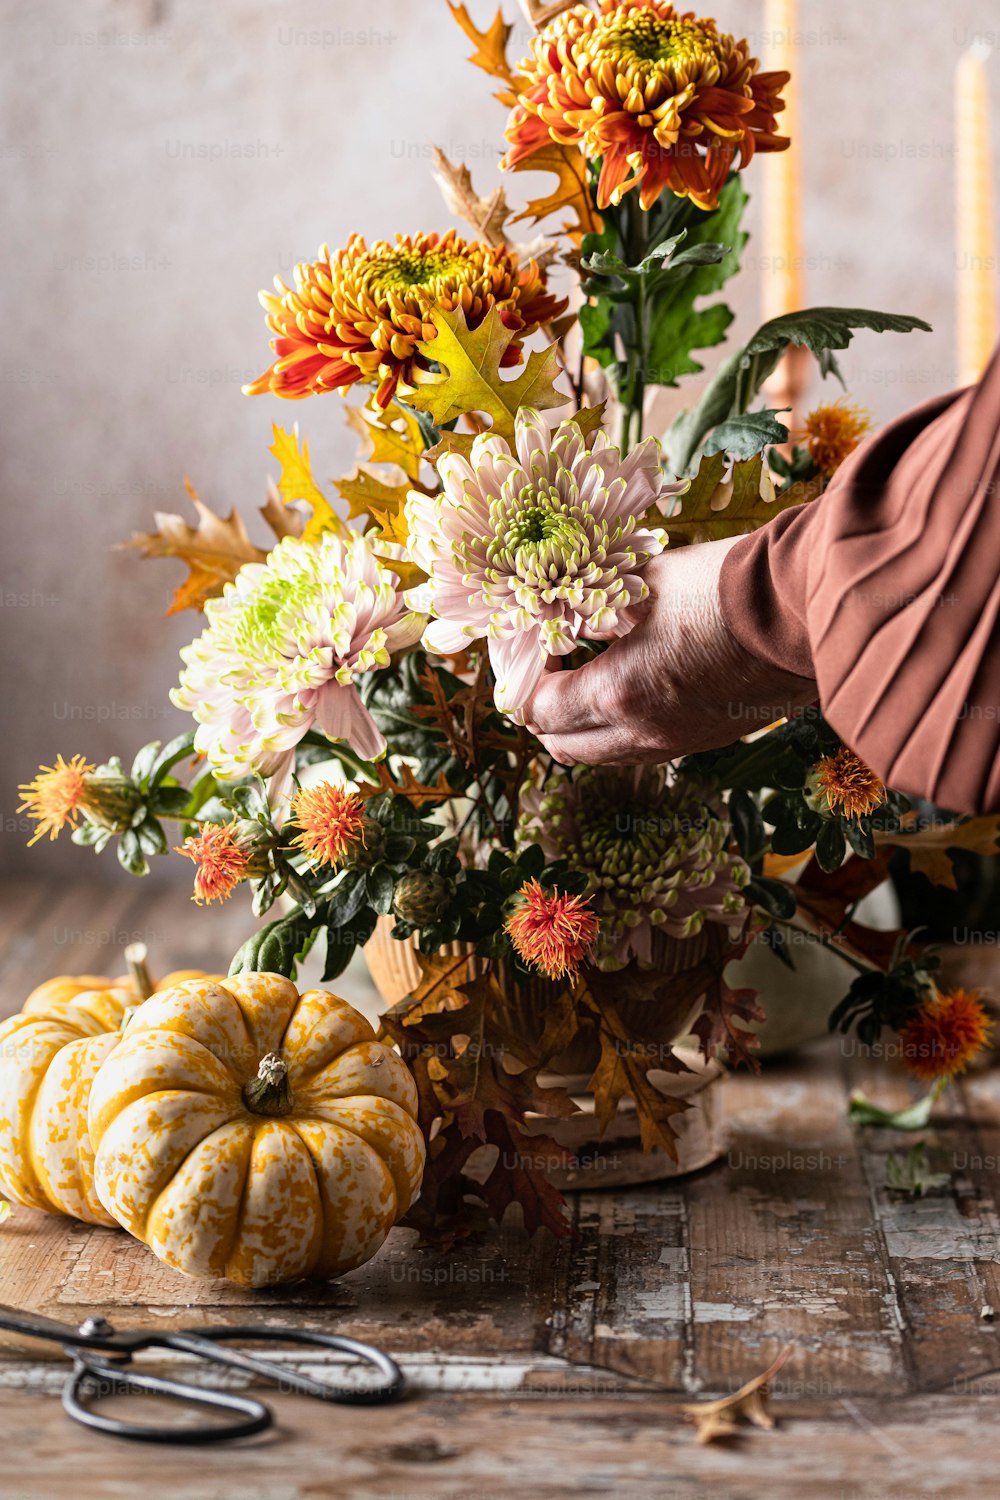 une personne disposant des fleurs sur une table avec une paire de ciseaux